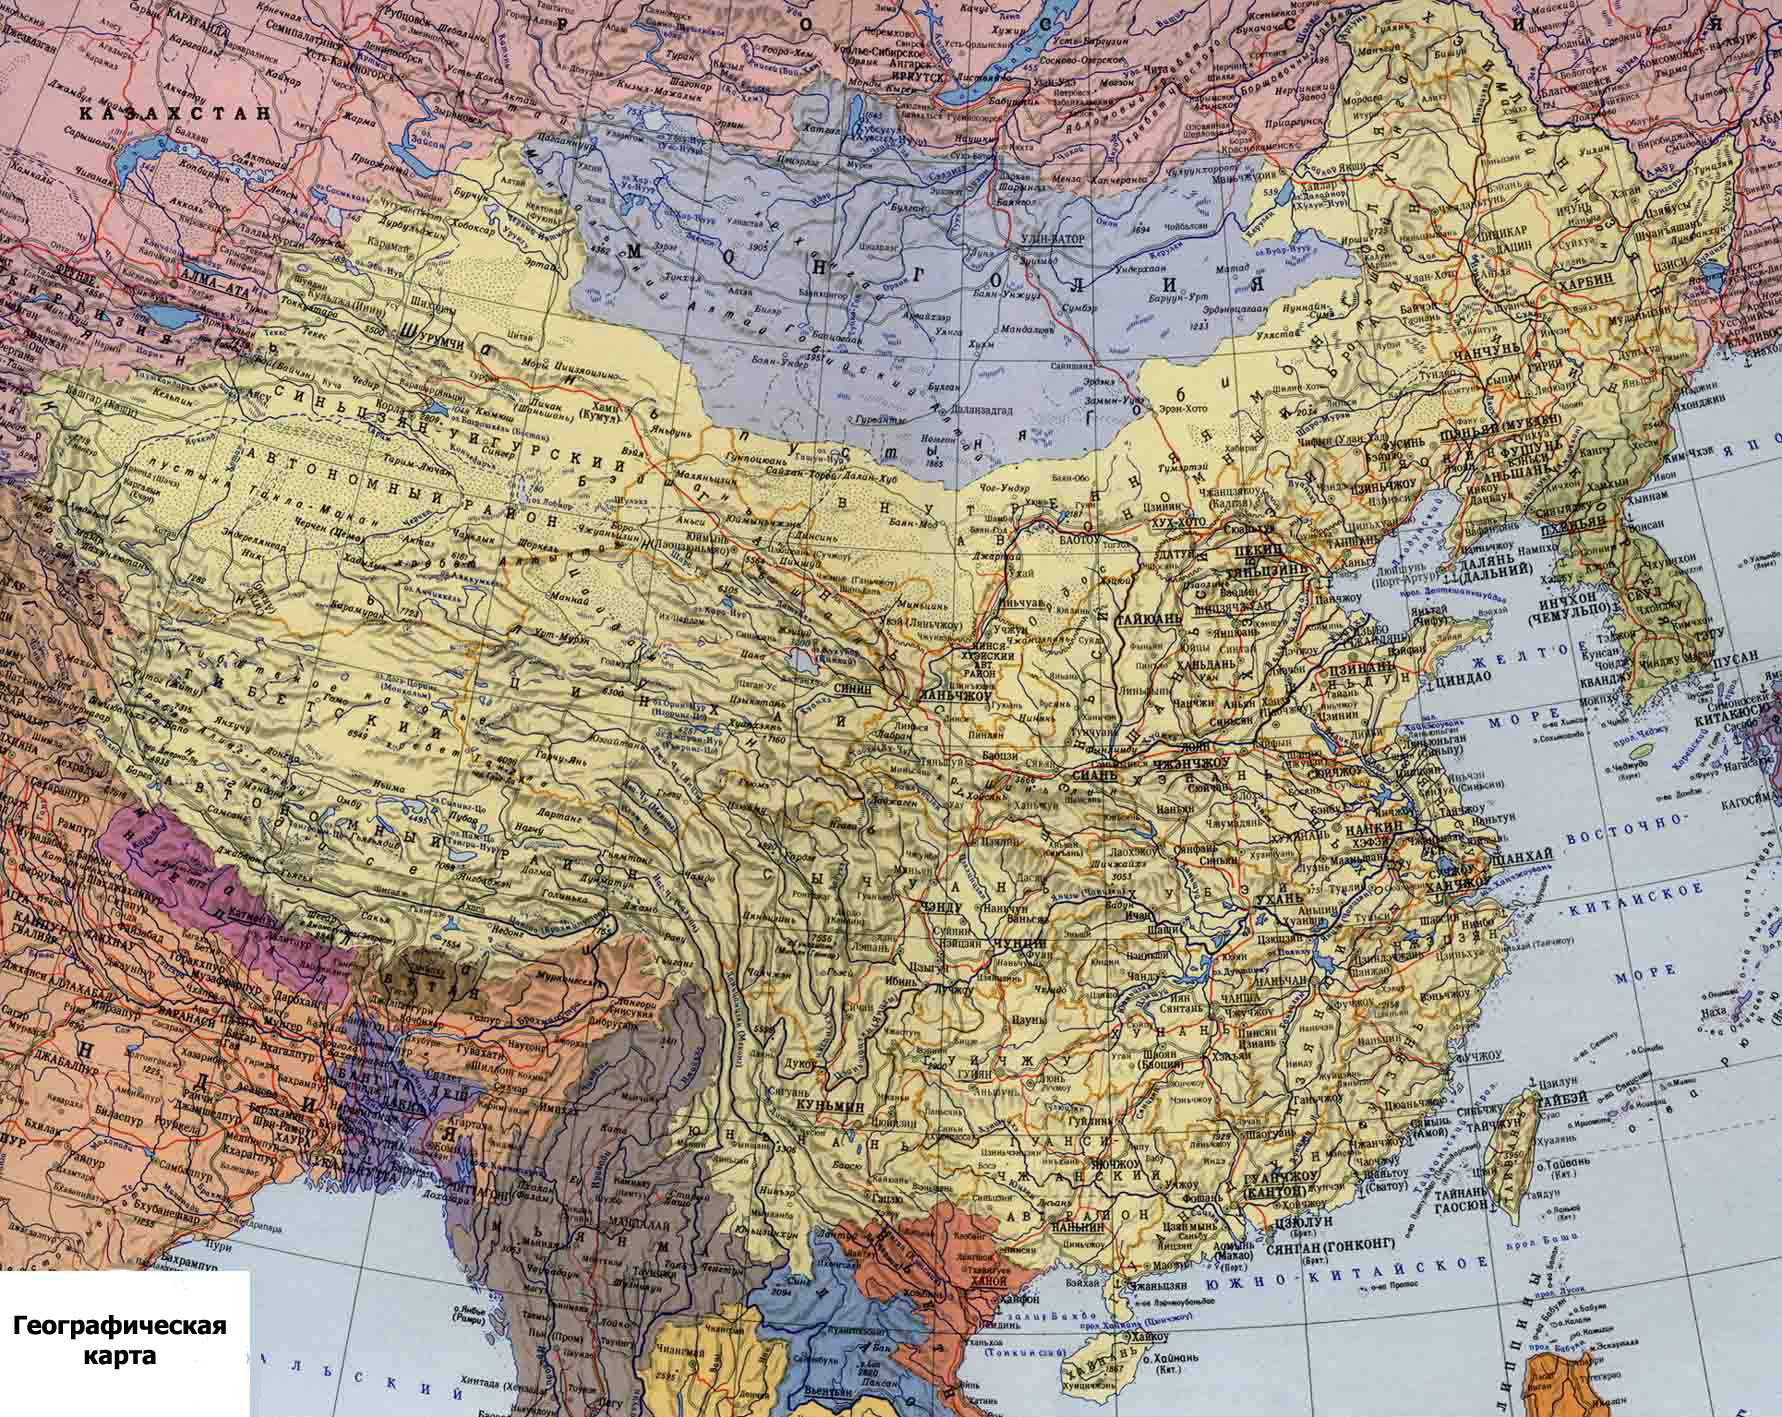 Карта китая на русском. Карта Китая географическая крупная. Китай карта географическая. Физическая карта Китая. Китай карта географическая на русском языке с городами подробная.